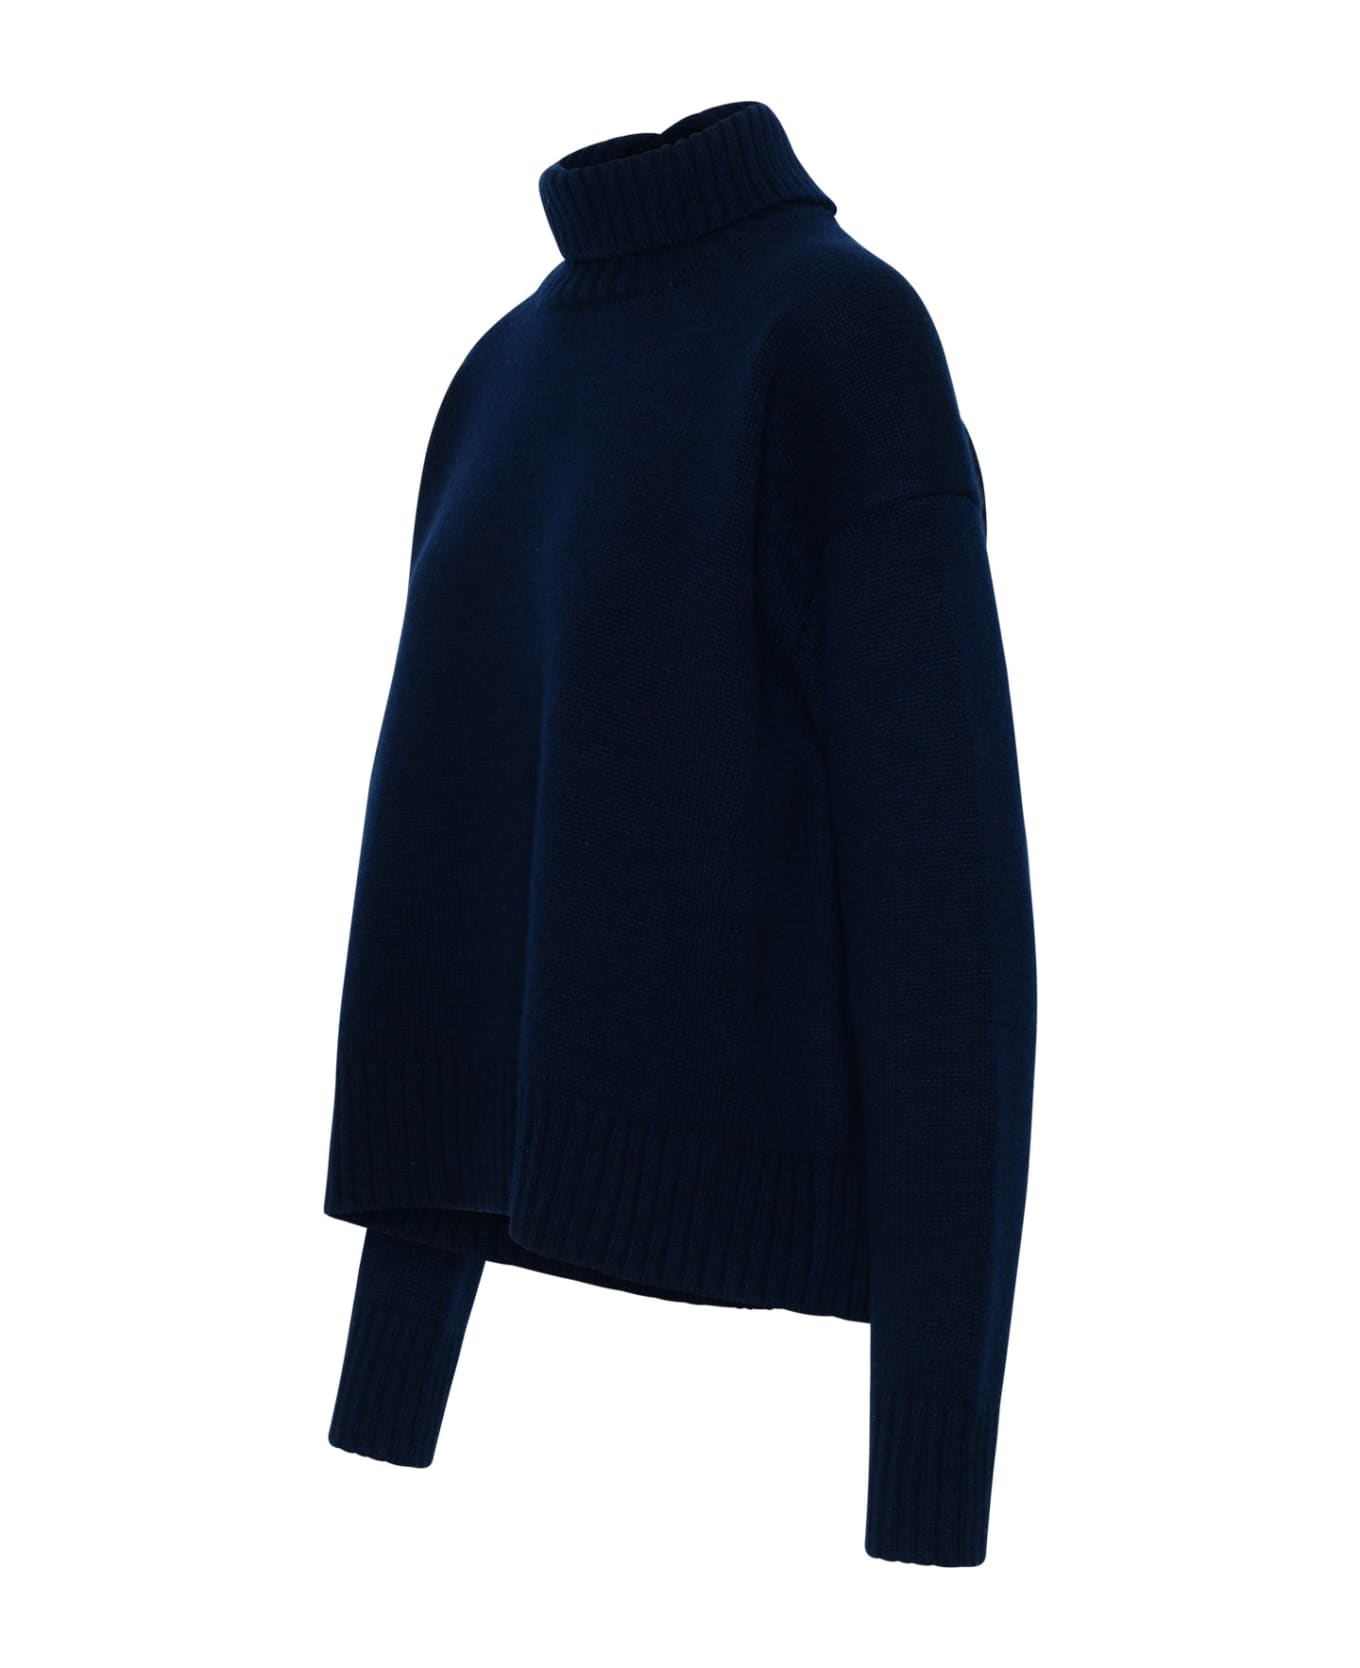 Jil Sander Sweater In Navy Cashmere Blend - Blue